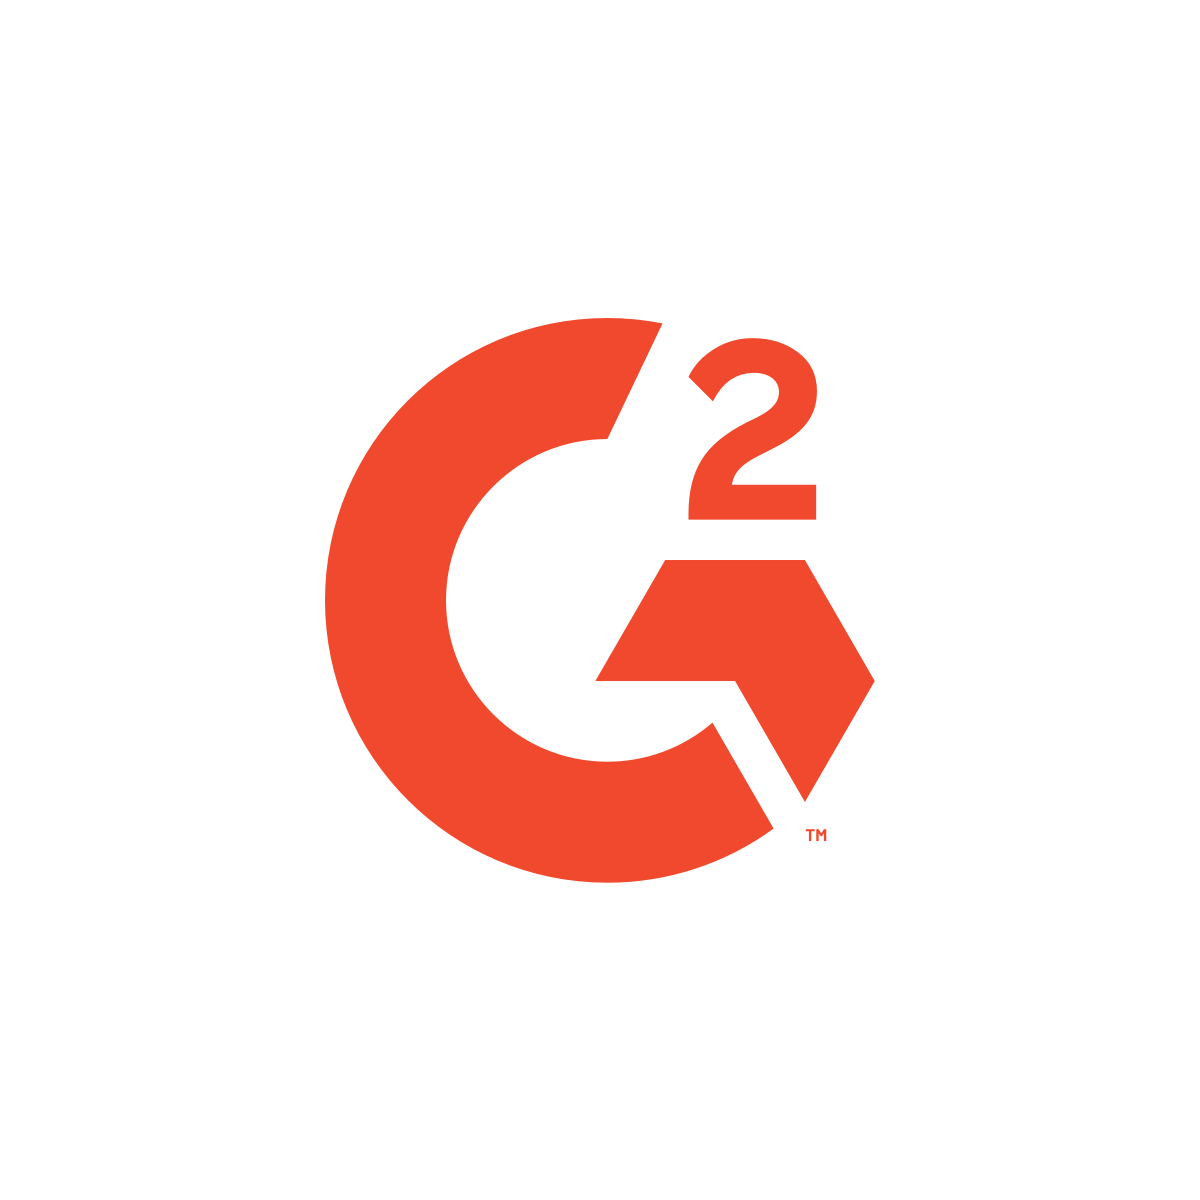 G2.com